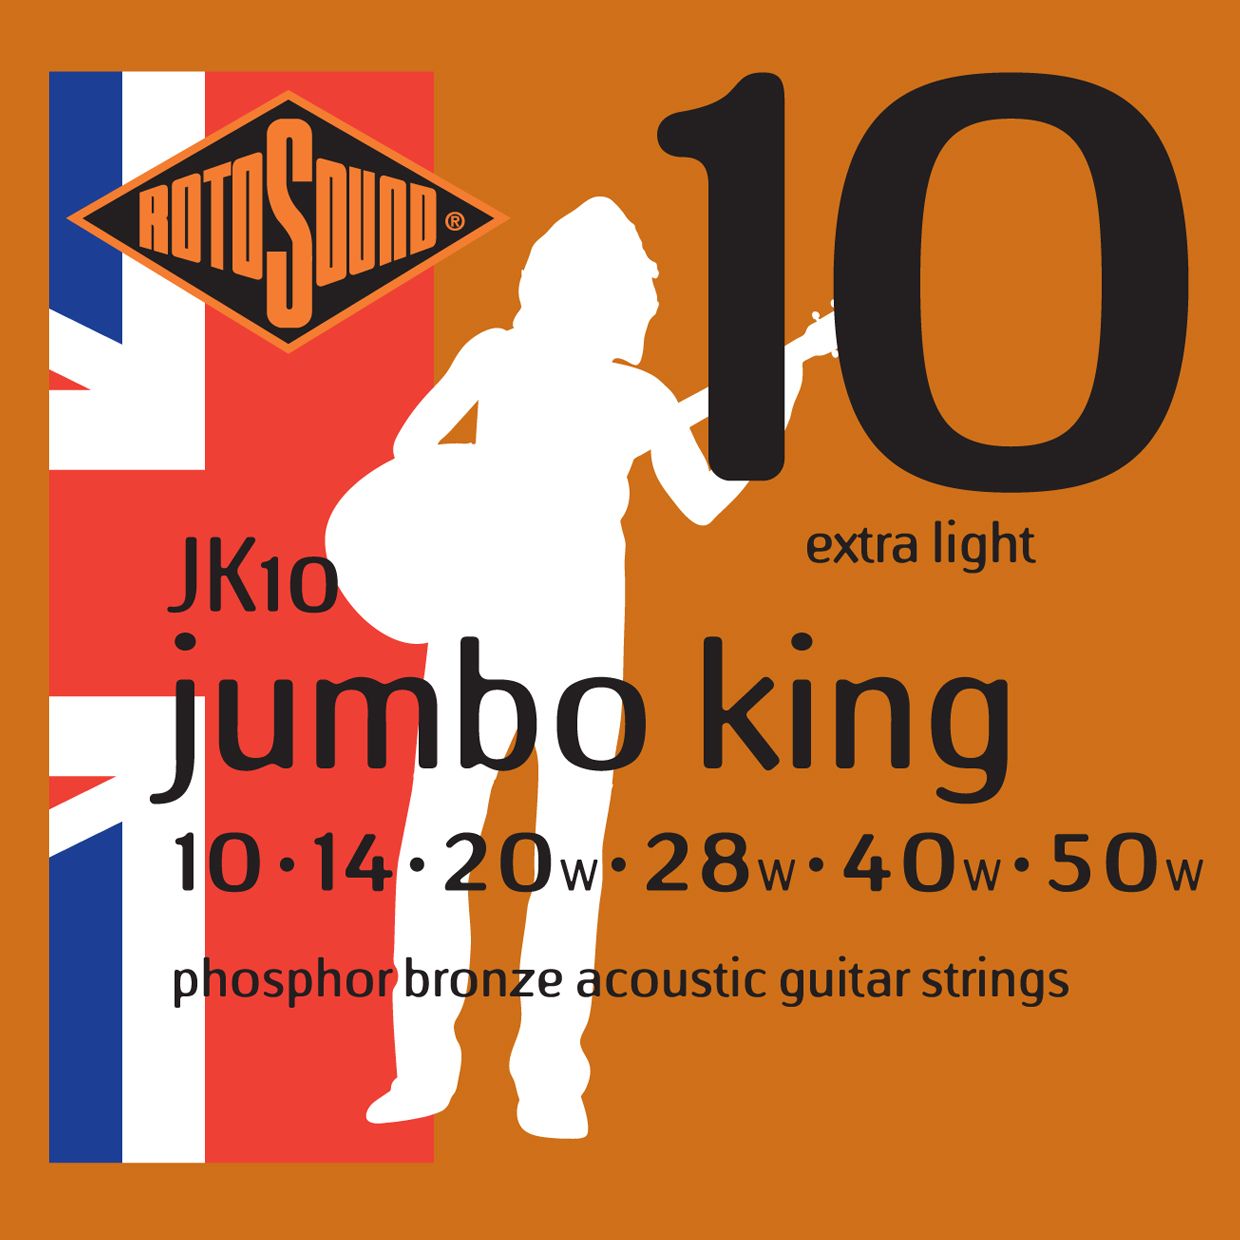 Детальная картинка товара ROTOSOUND JK10 STRINGS PHOSPHOR BRONZE в магазине Музыкальная Тема